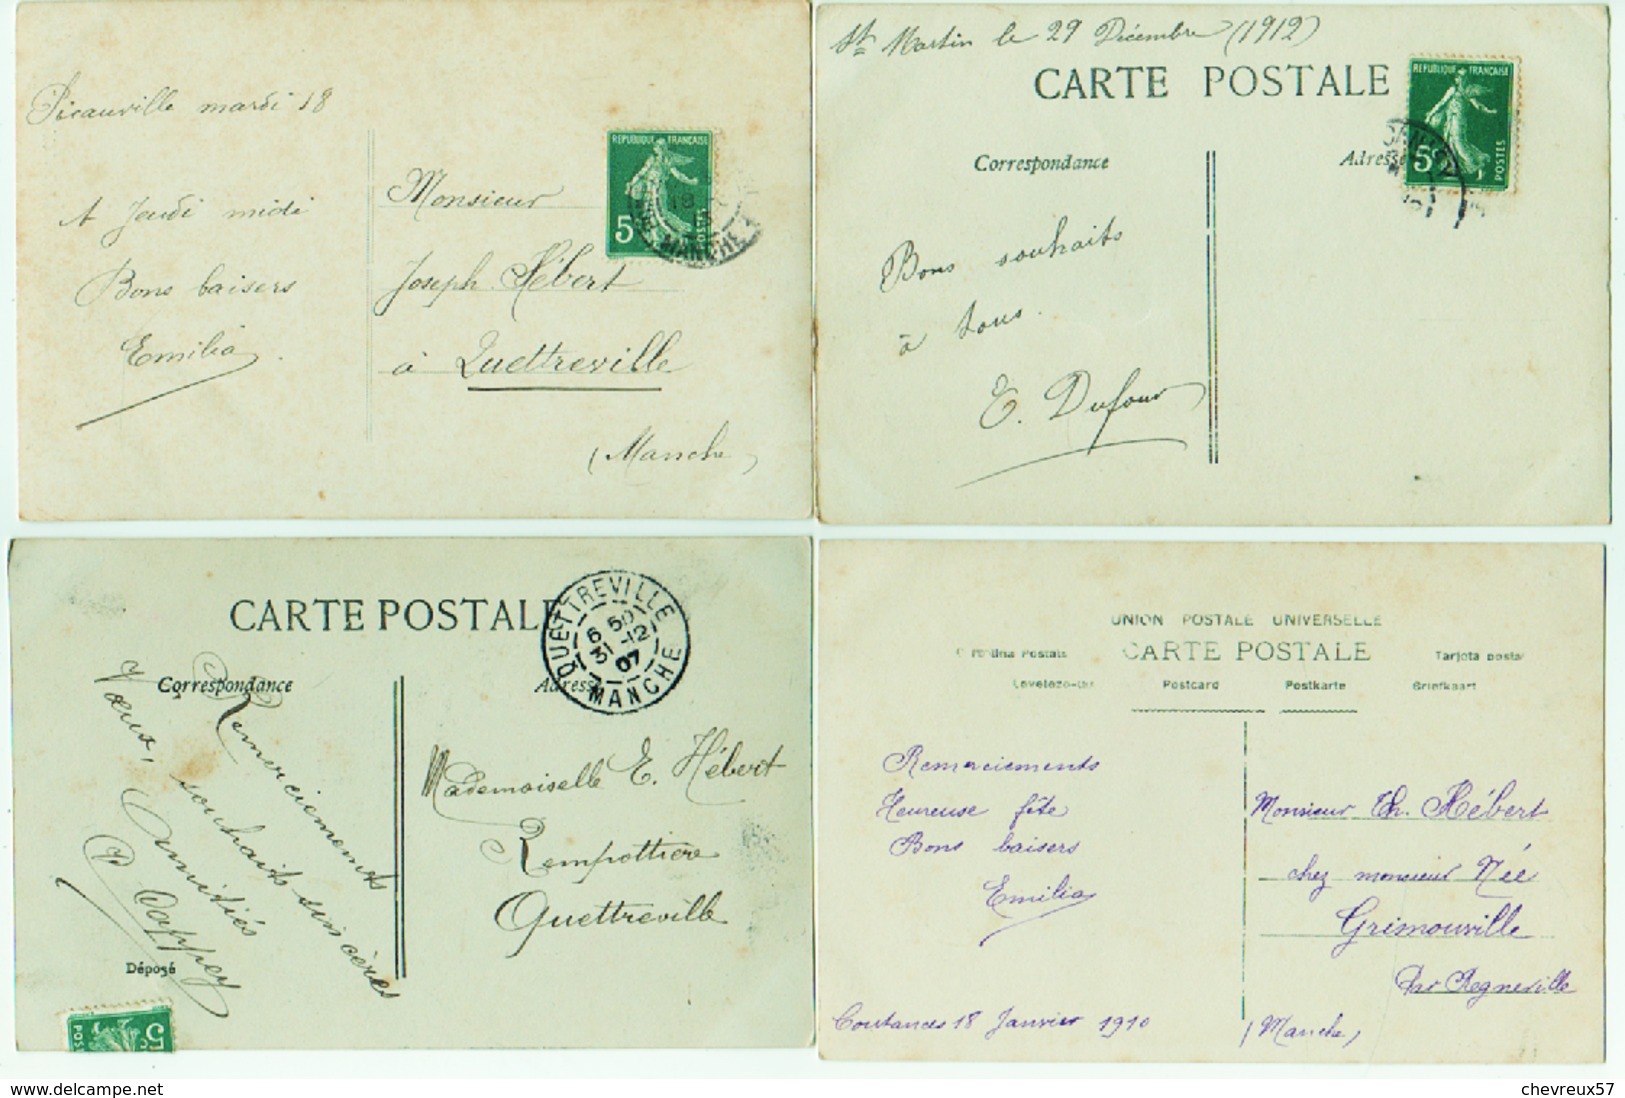 VILLES ET VILLAGES DE FRANCE - LOT 35 - 70 cartes anciennes Divers France